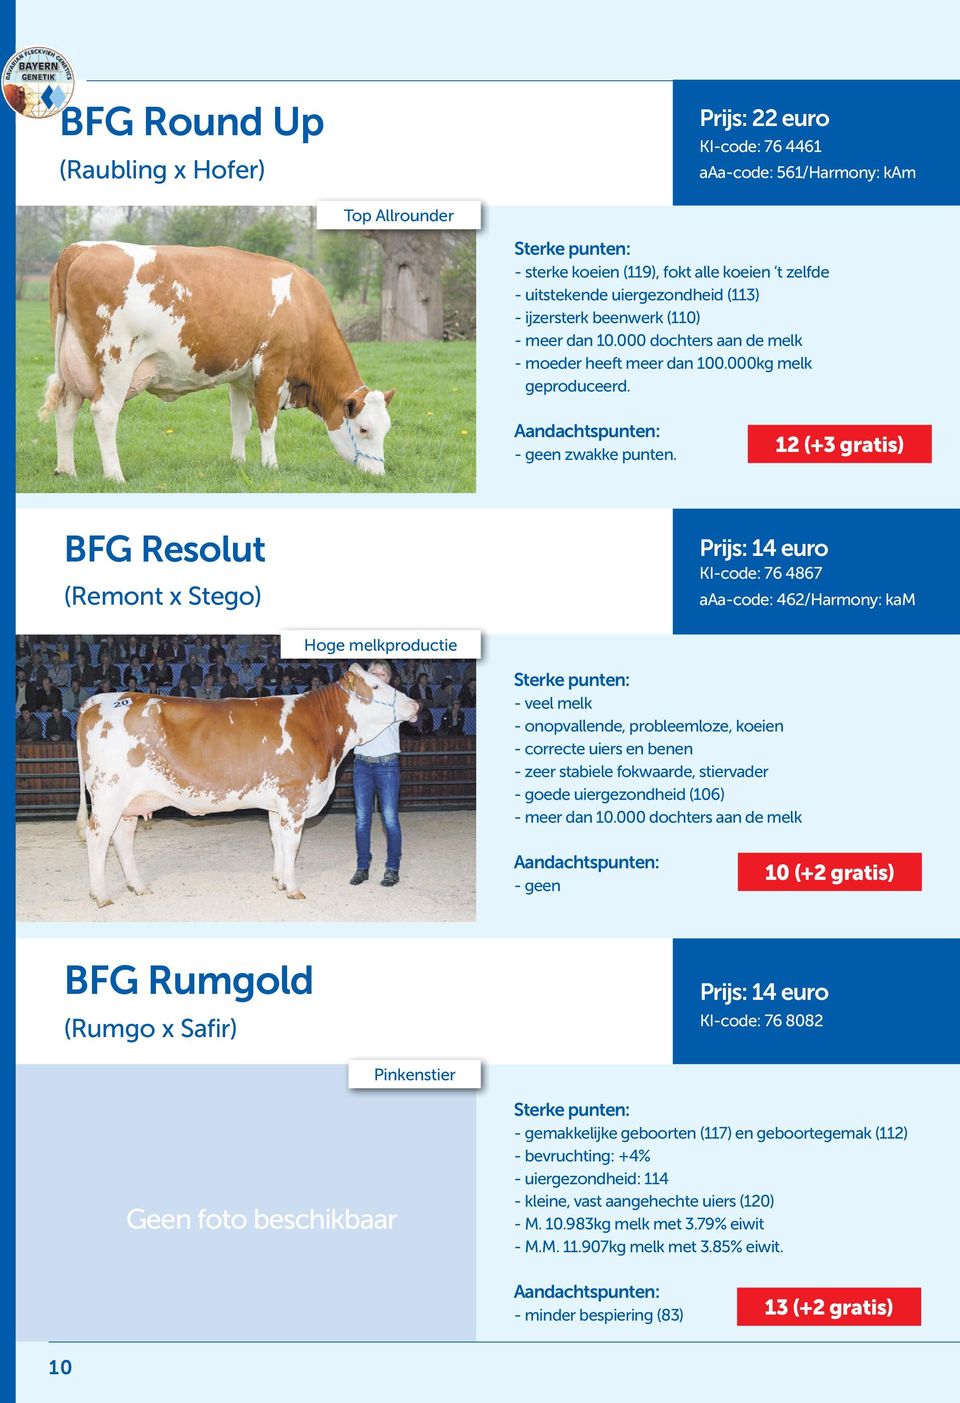 12 (+3 gratis) BFG Resolut (Remont x Stego) Prijs: 14 euro KI-code: 76 4867 aaa-code: 462/Harmony: kam Hoge melkproductie Sterke punten: - veel melk - onopvallende, probleemloze, koeien - correcte